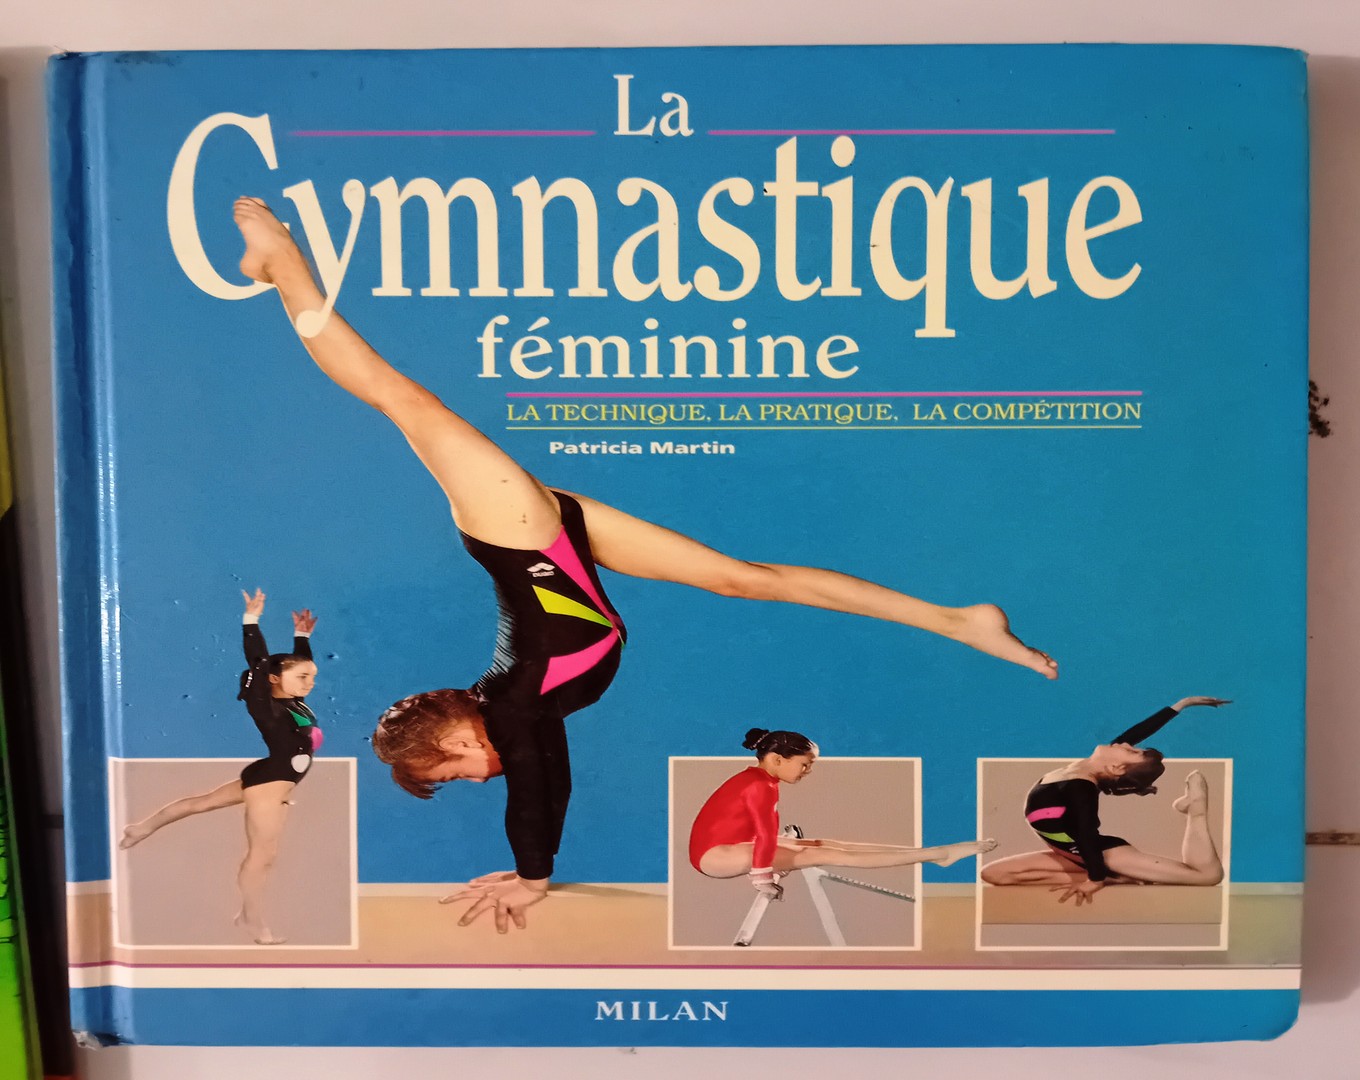 libros y revistas - Libro francés muy completo en imágenes sobre gimnasia femenina.